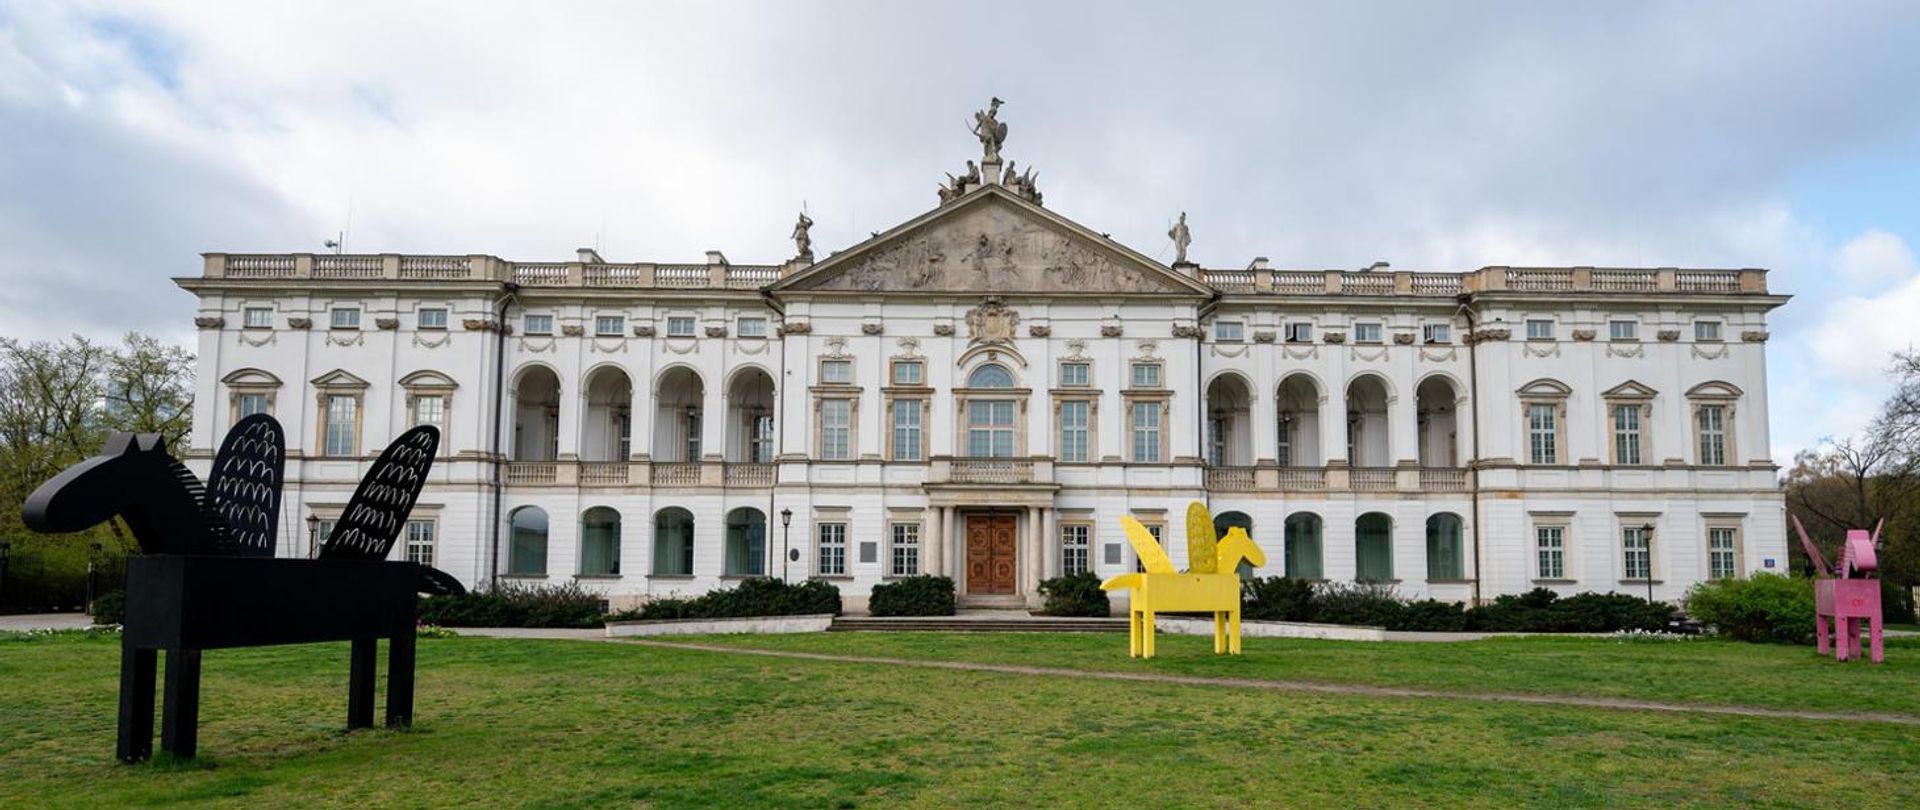 Pałac Krasińskich w Warszawie już otwarty i dostępny dla zwiedzających 